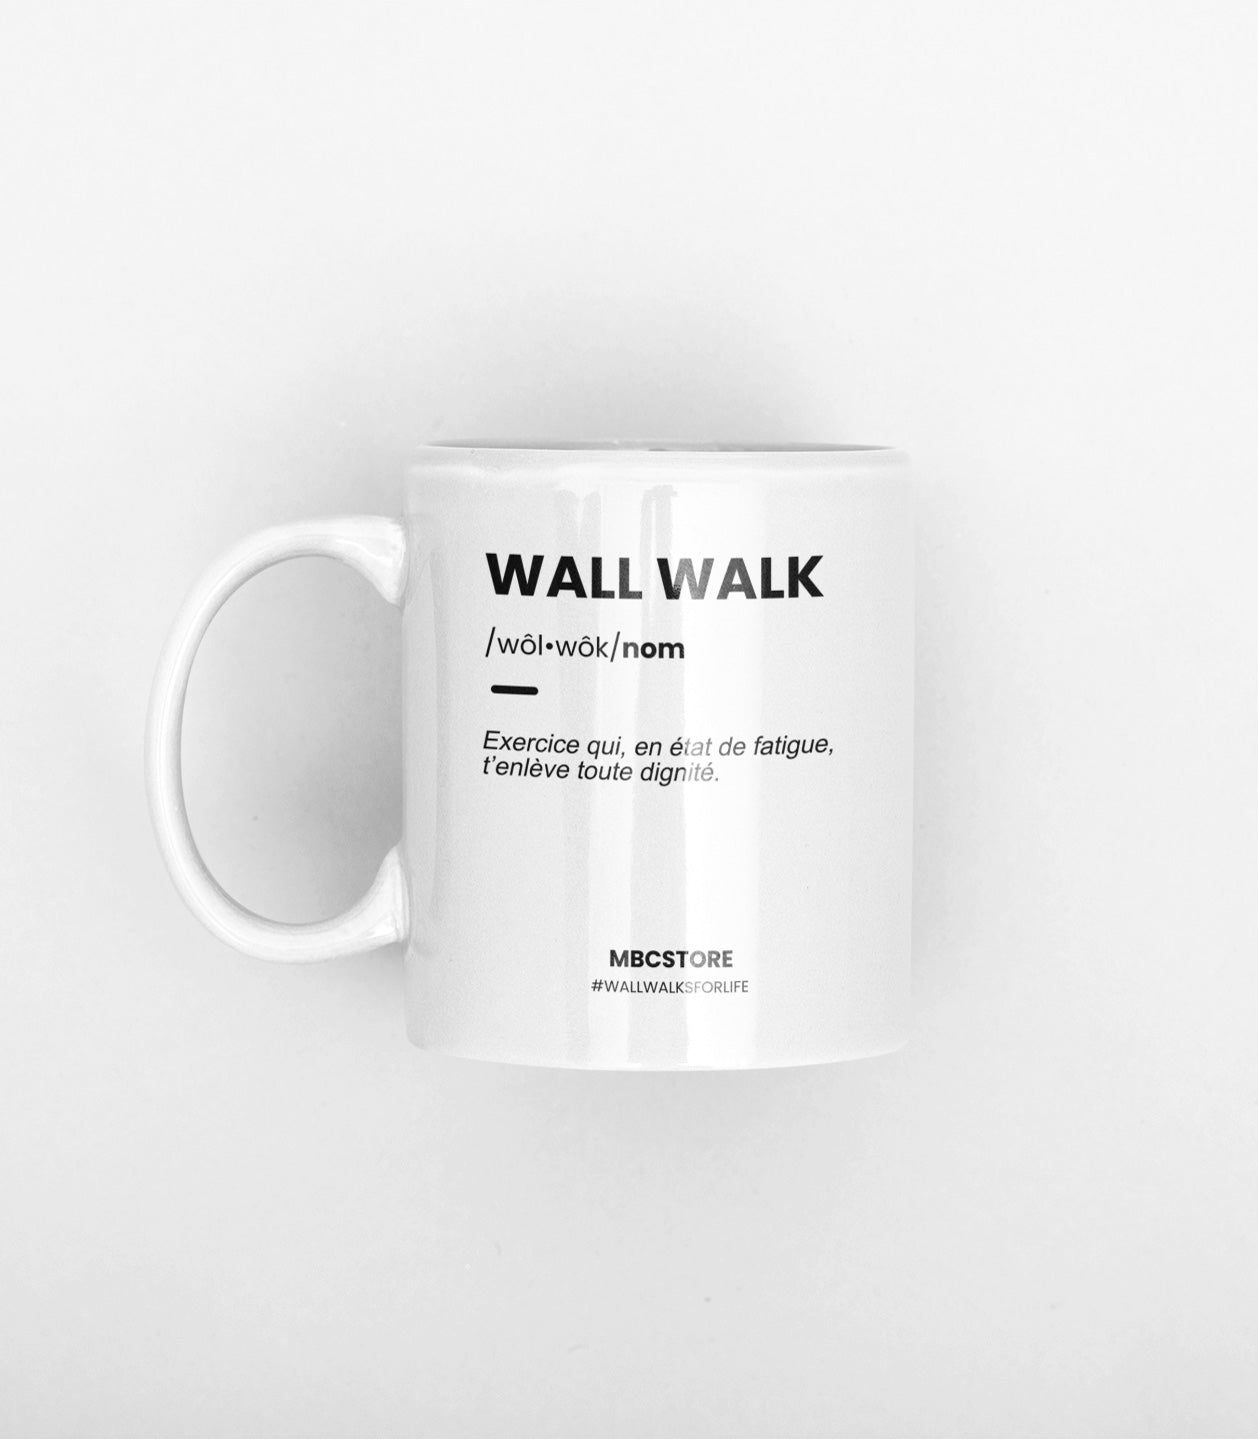 tasse wall walk mbc store